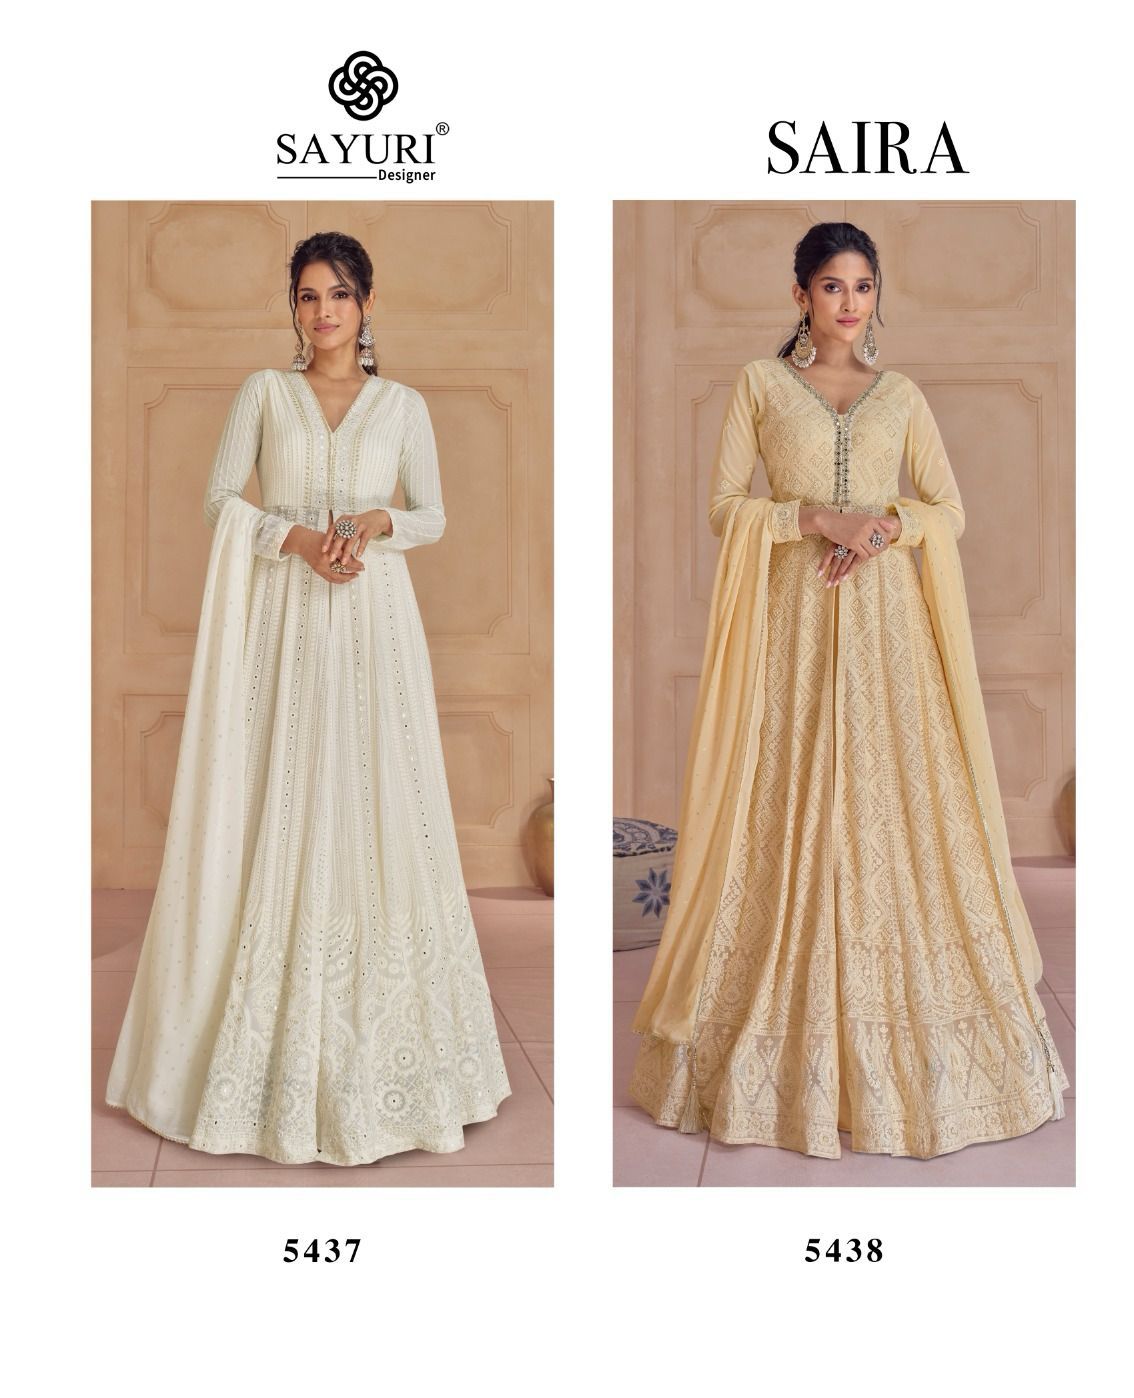 Sayuri Saira collection 1